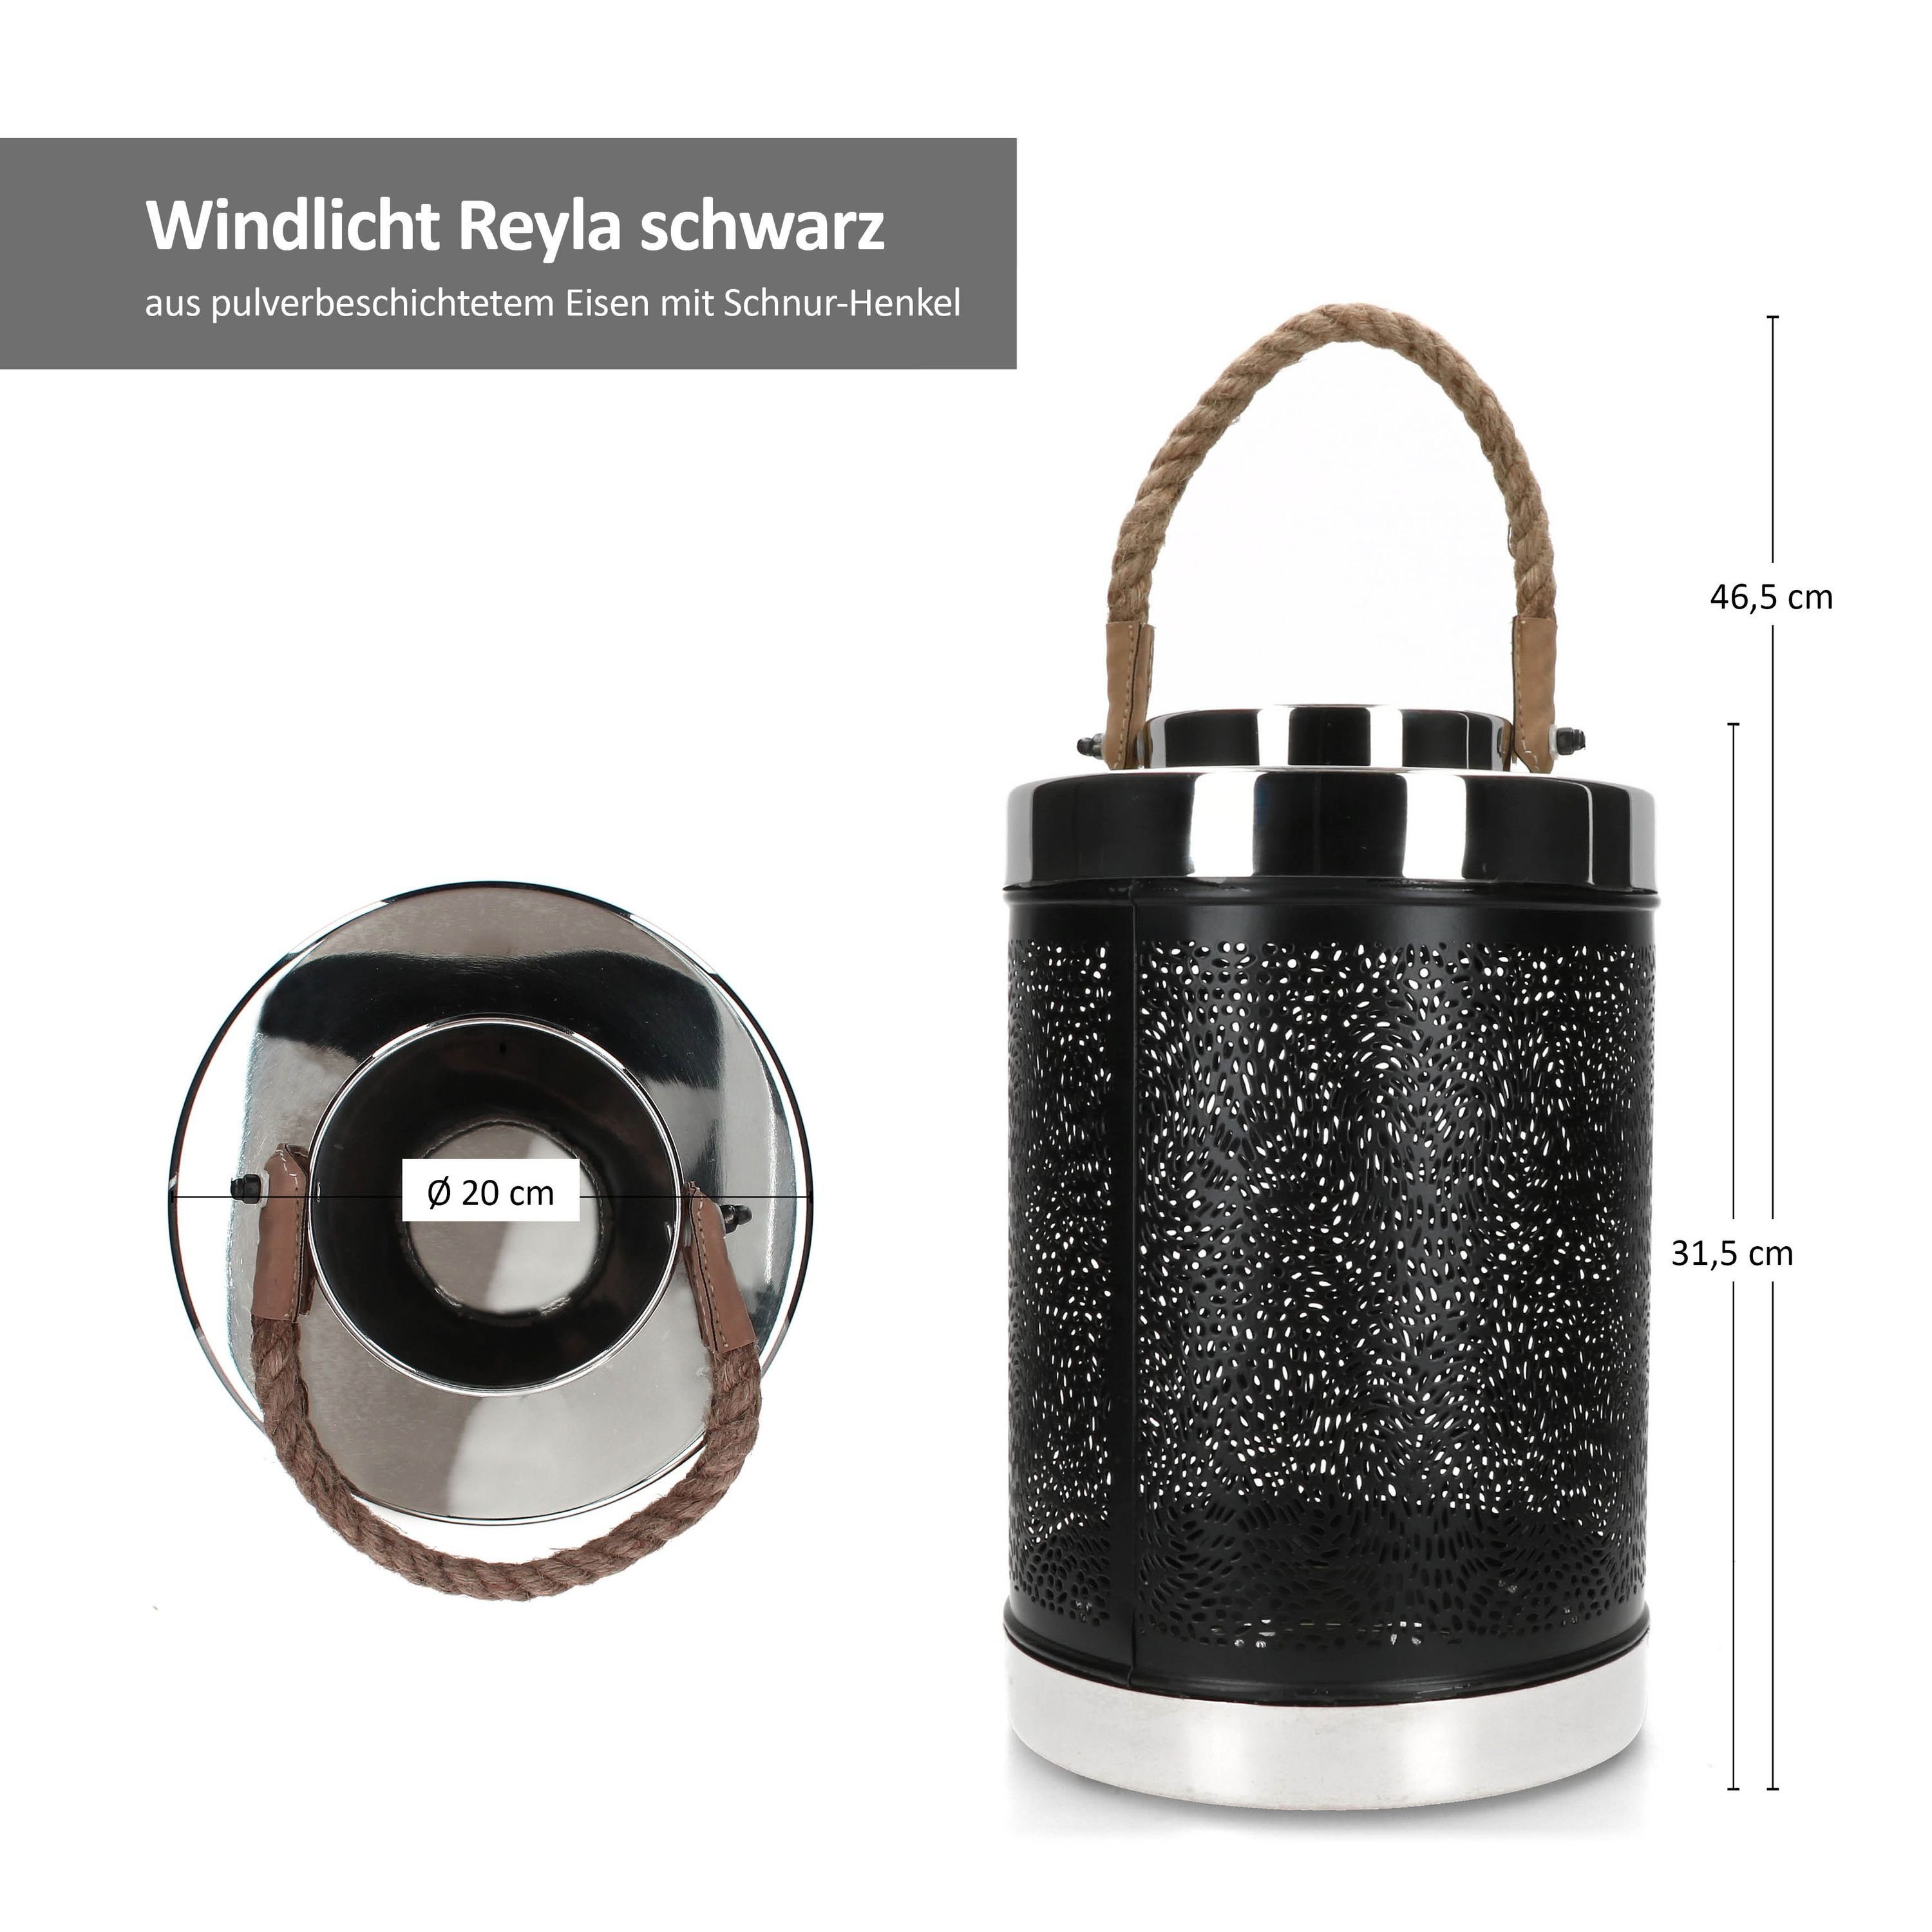 BOLTZE Teelichthalter Windlicht Reyla groß schwarz Kerzen-Ständer Laterne H31,5 Ø20cm